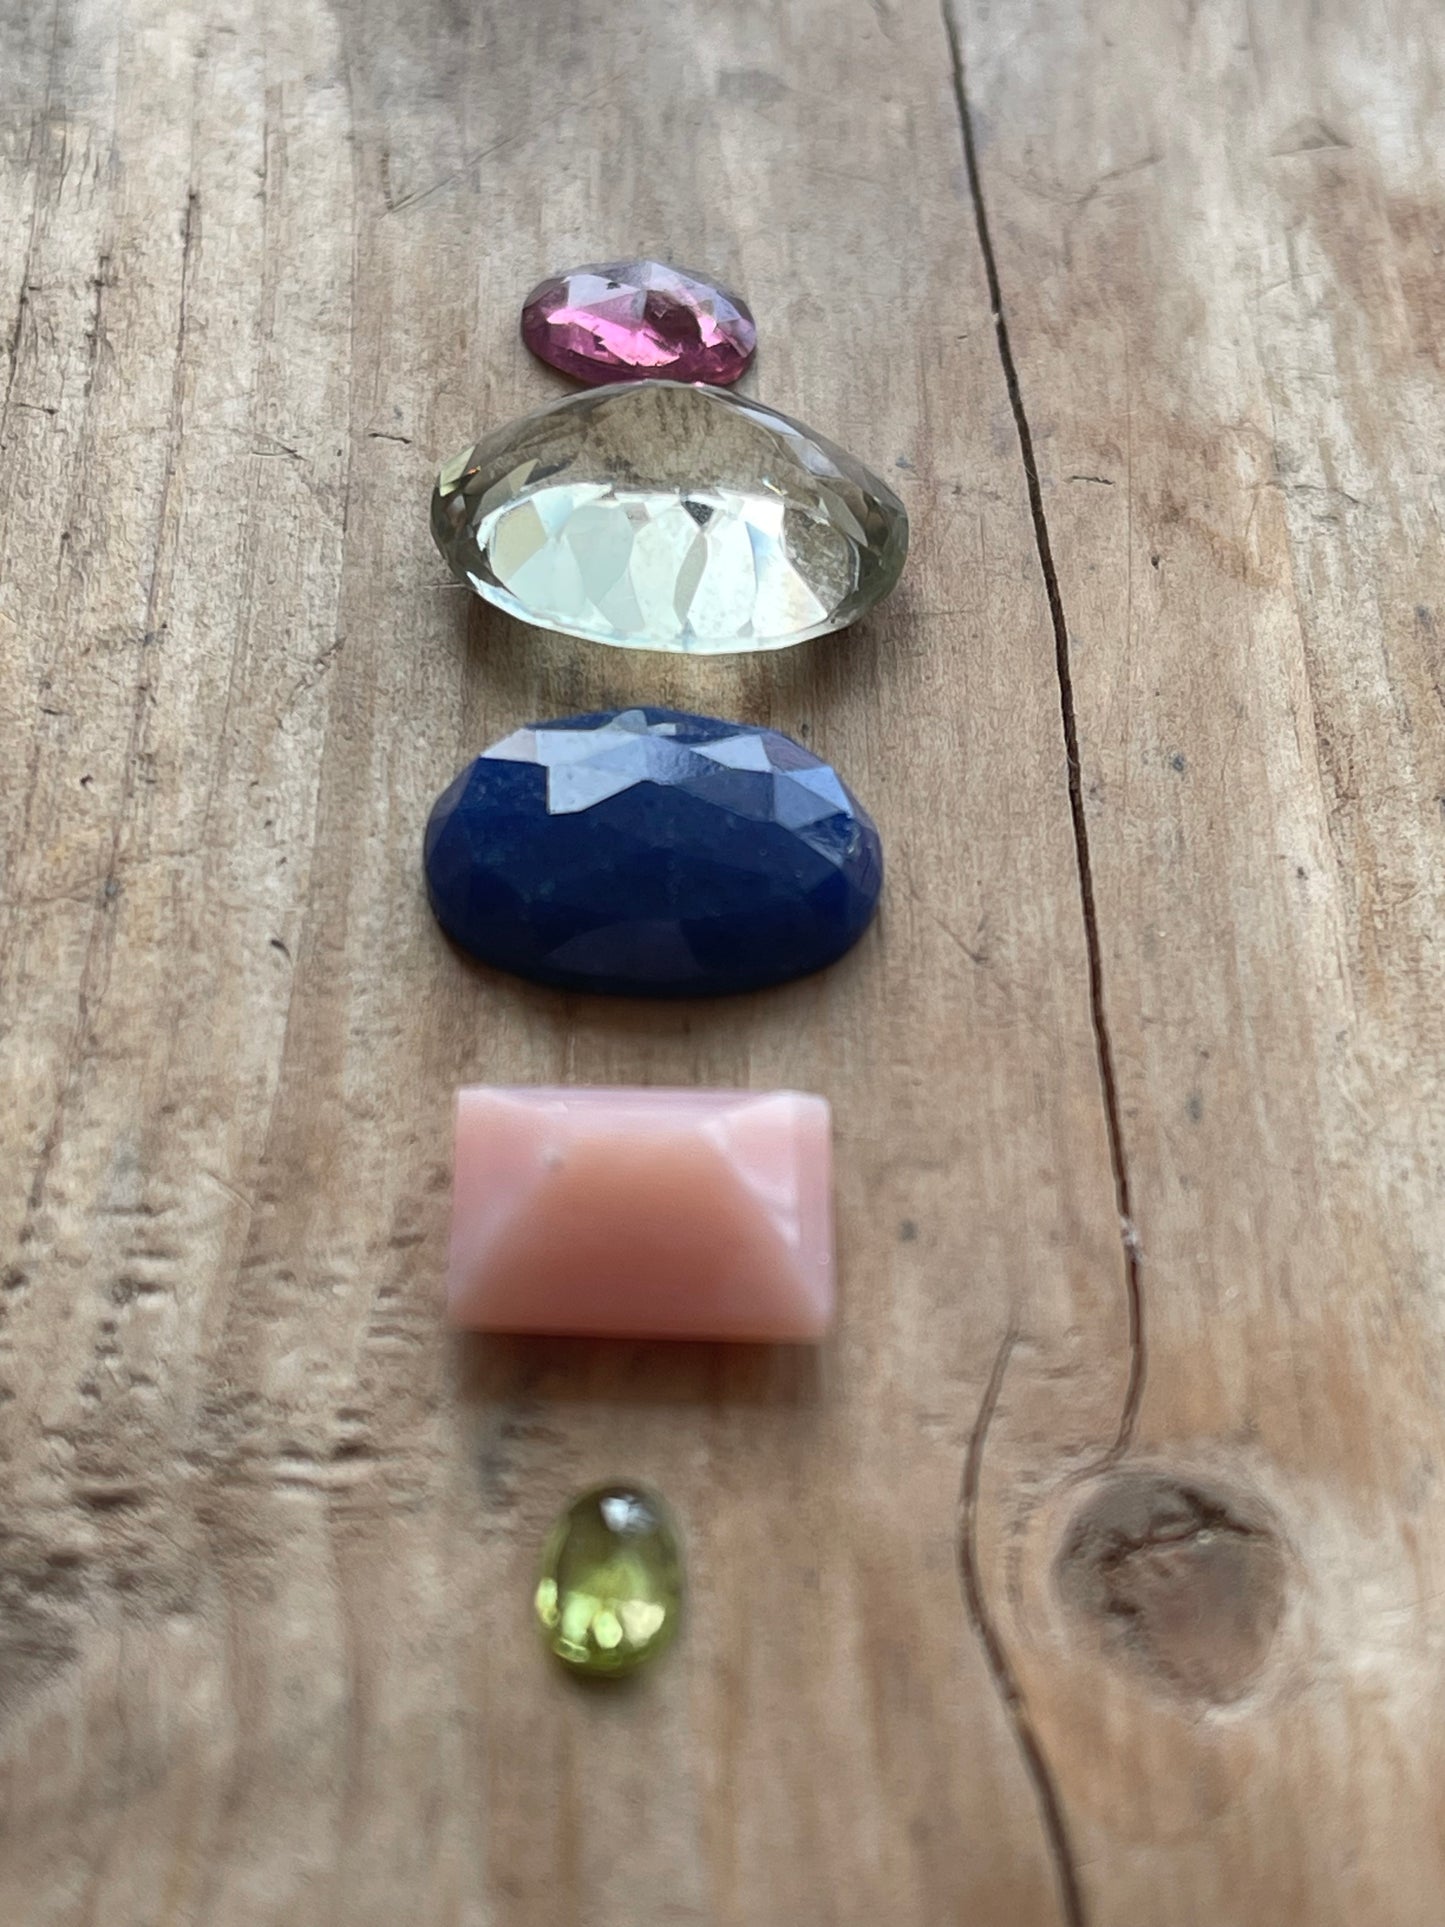 Gemstone Collection 25: Green Amethyst, Pink Opal, Peridot, Rainbow Tourmaline, Lapis Lazuli - 24CT